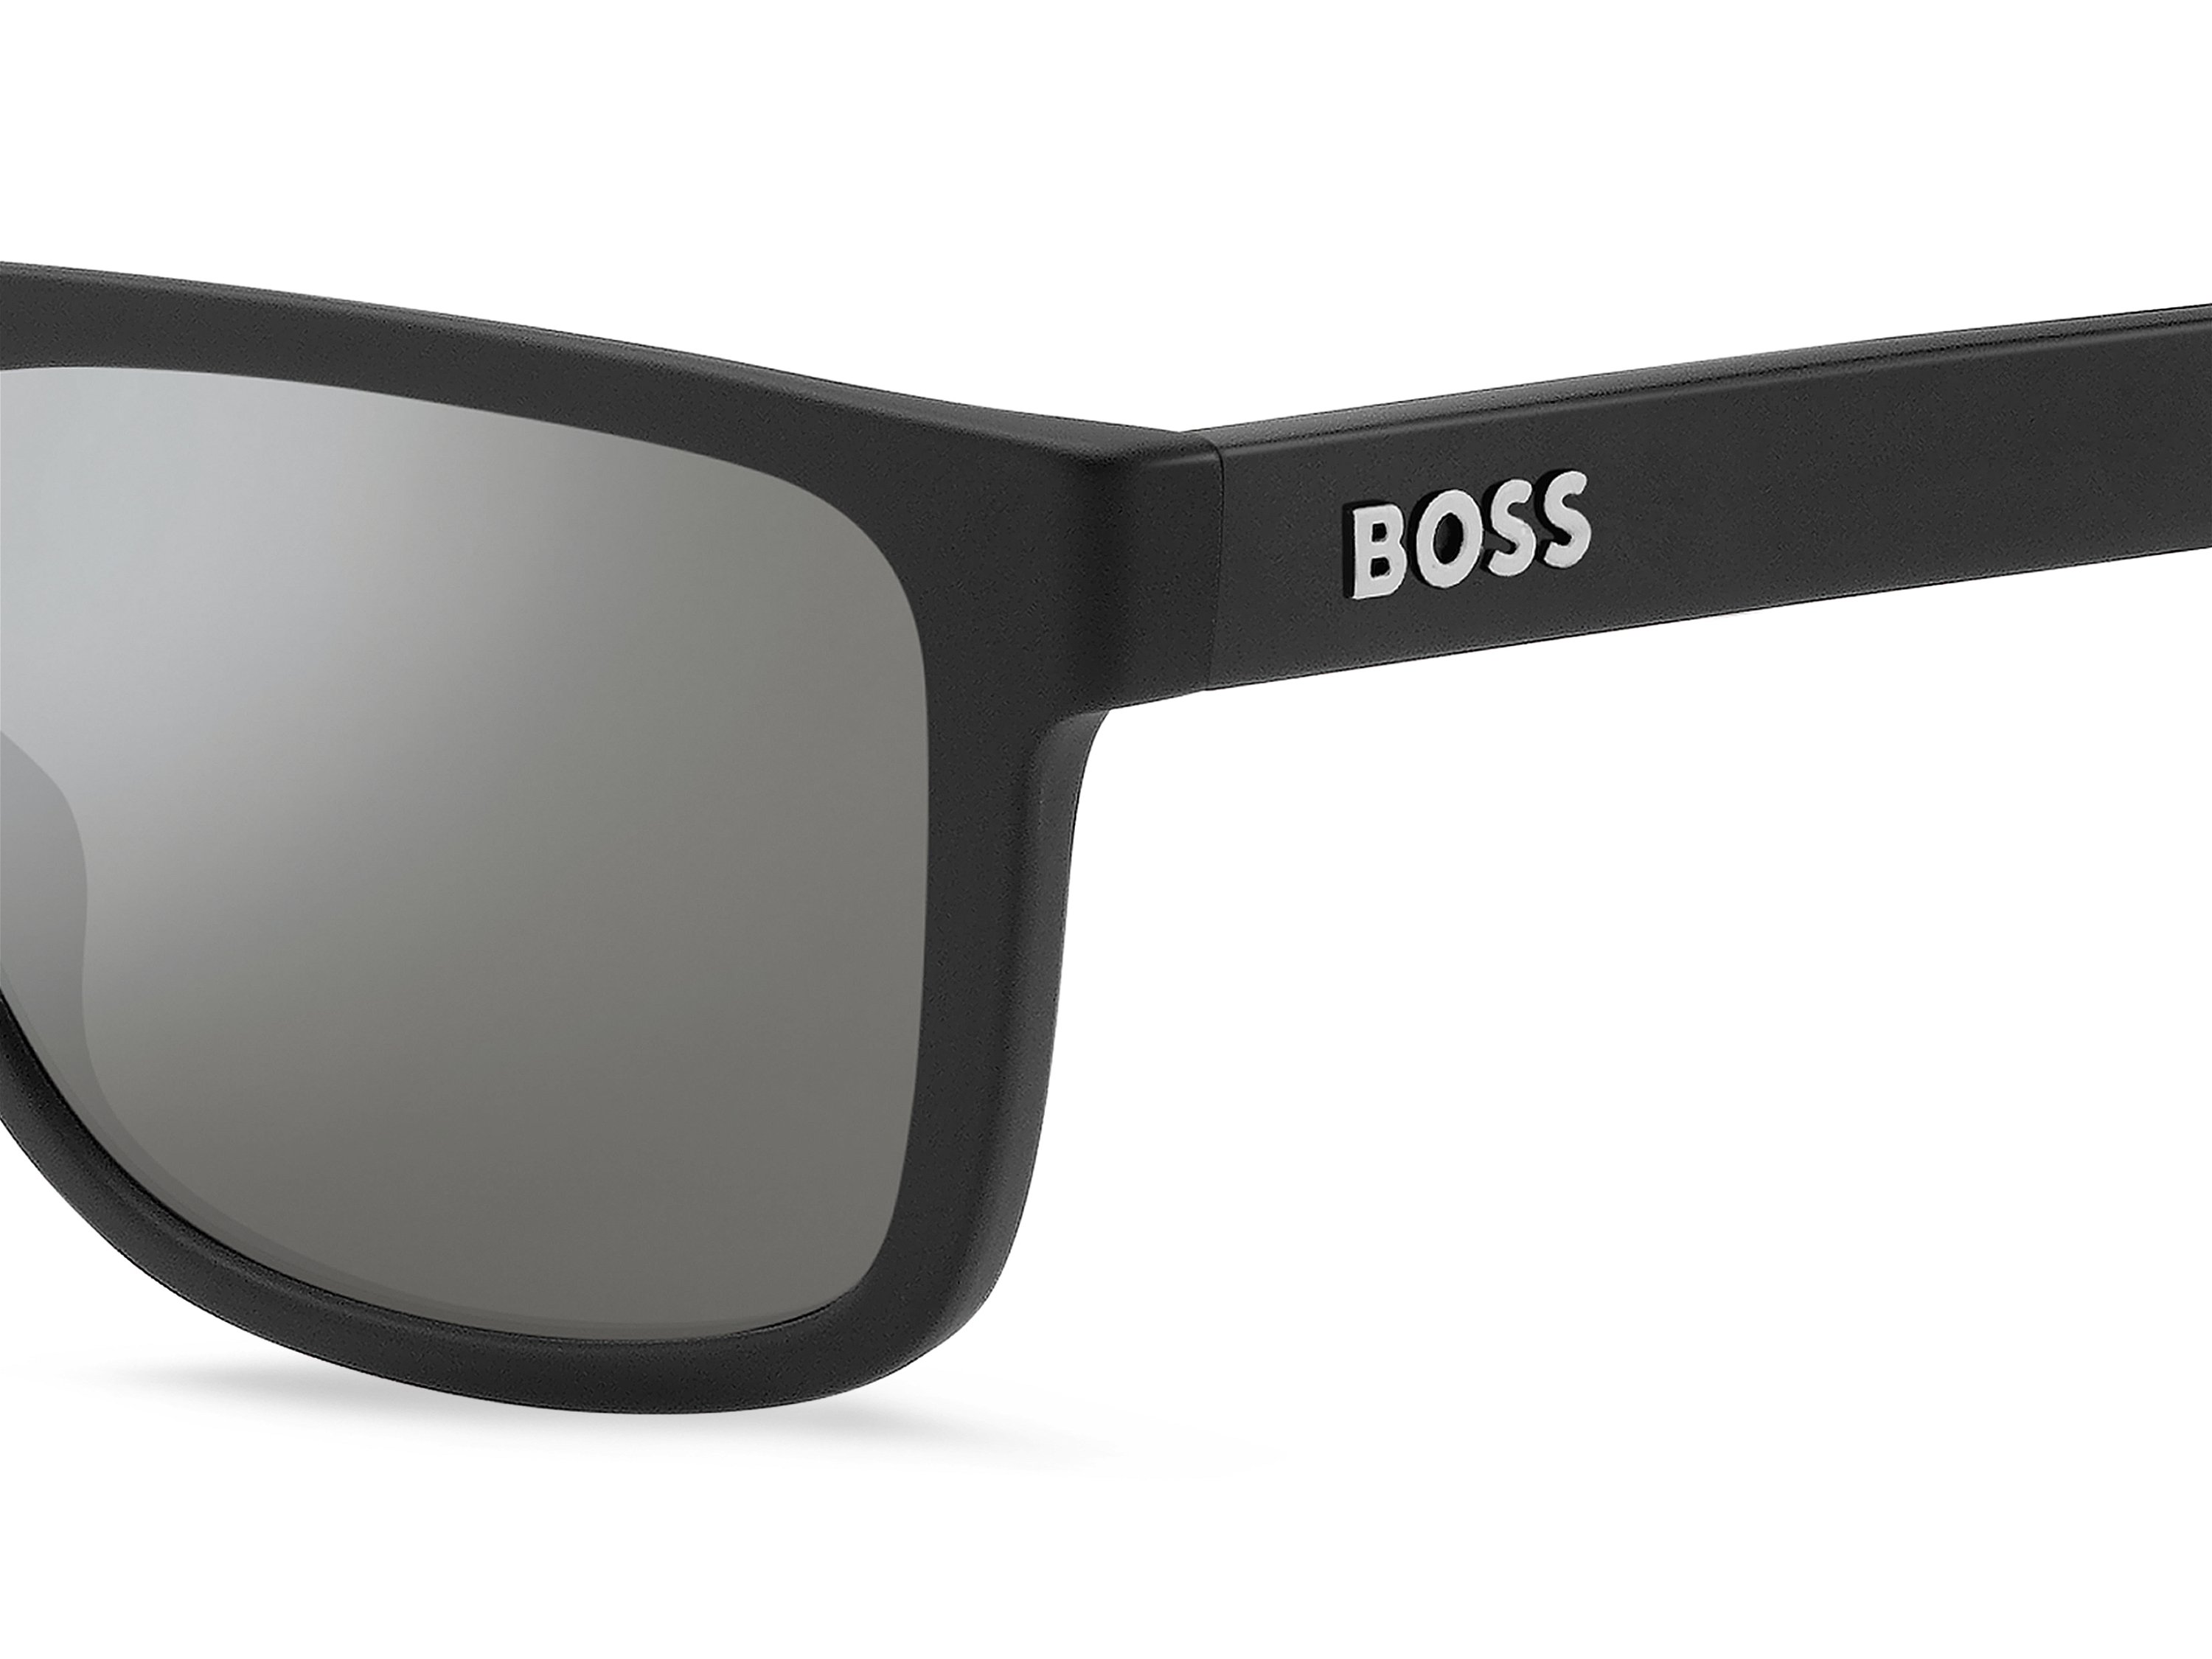 Das Bild zeigt die Sonnenbrille BOSS1647S 003 von der Marke BOSS in Schwarz.